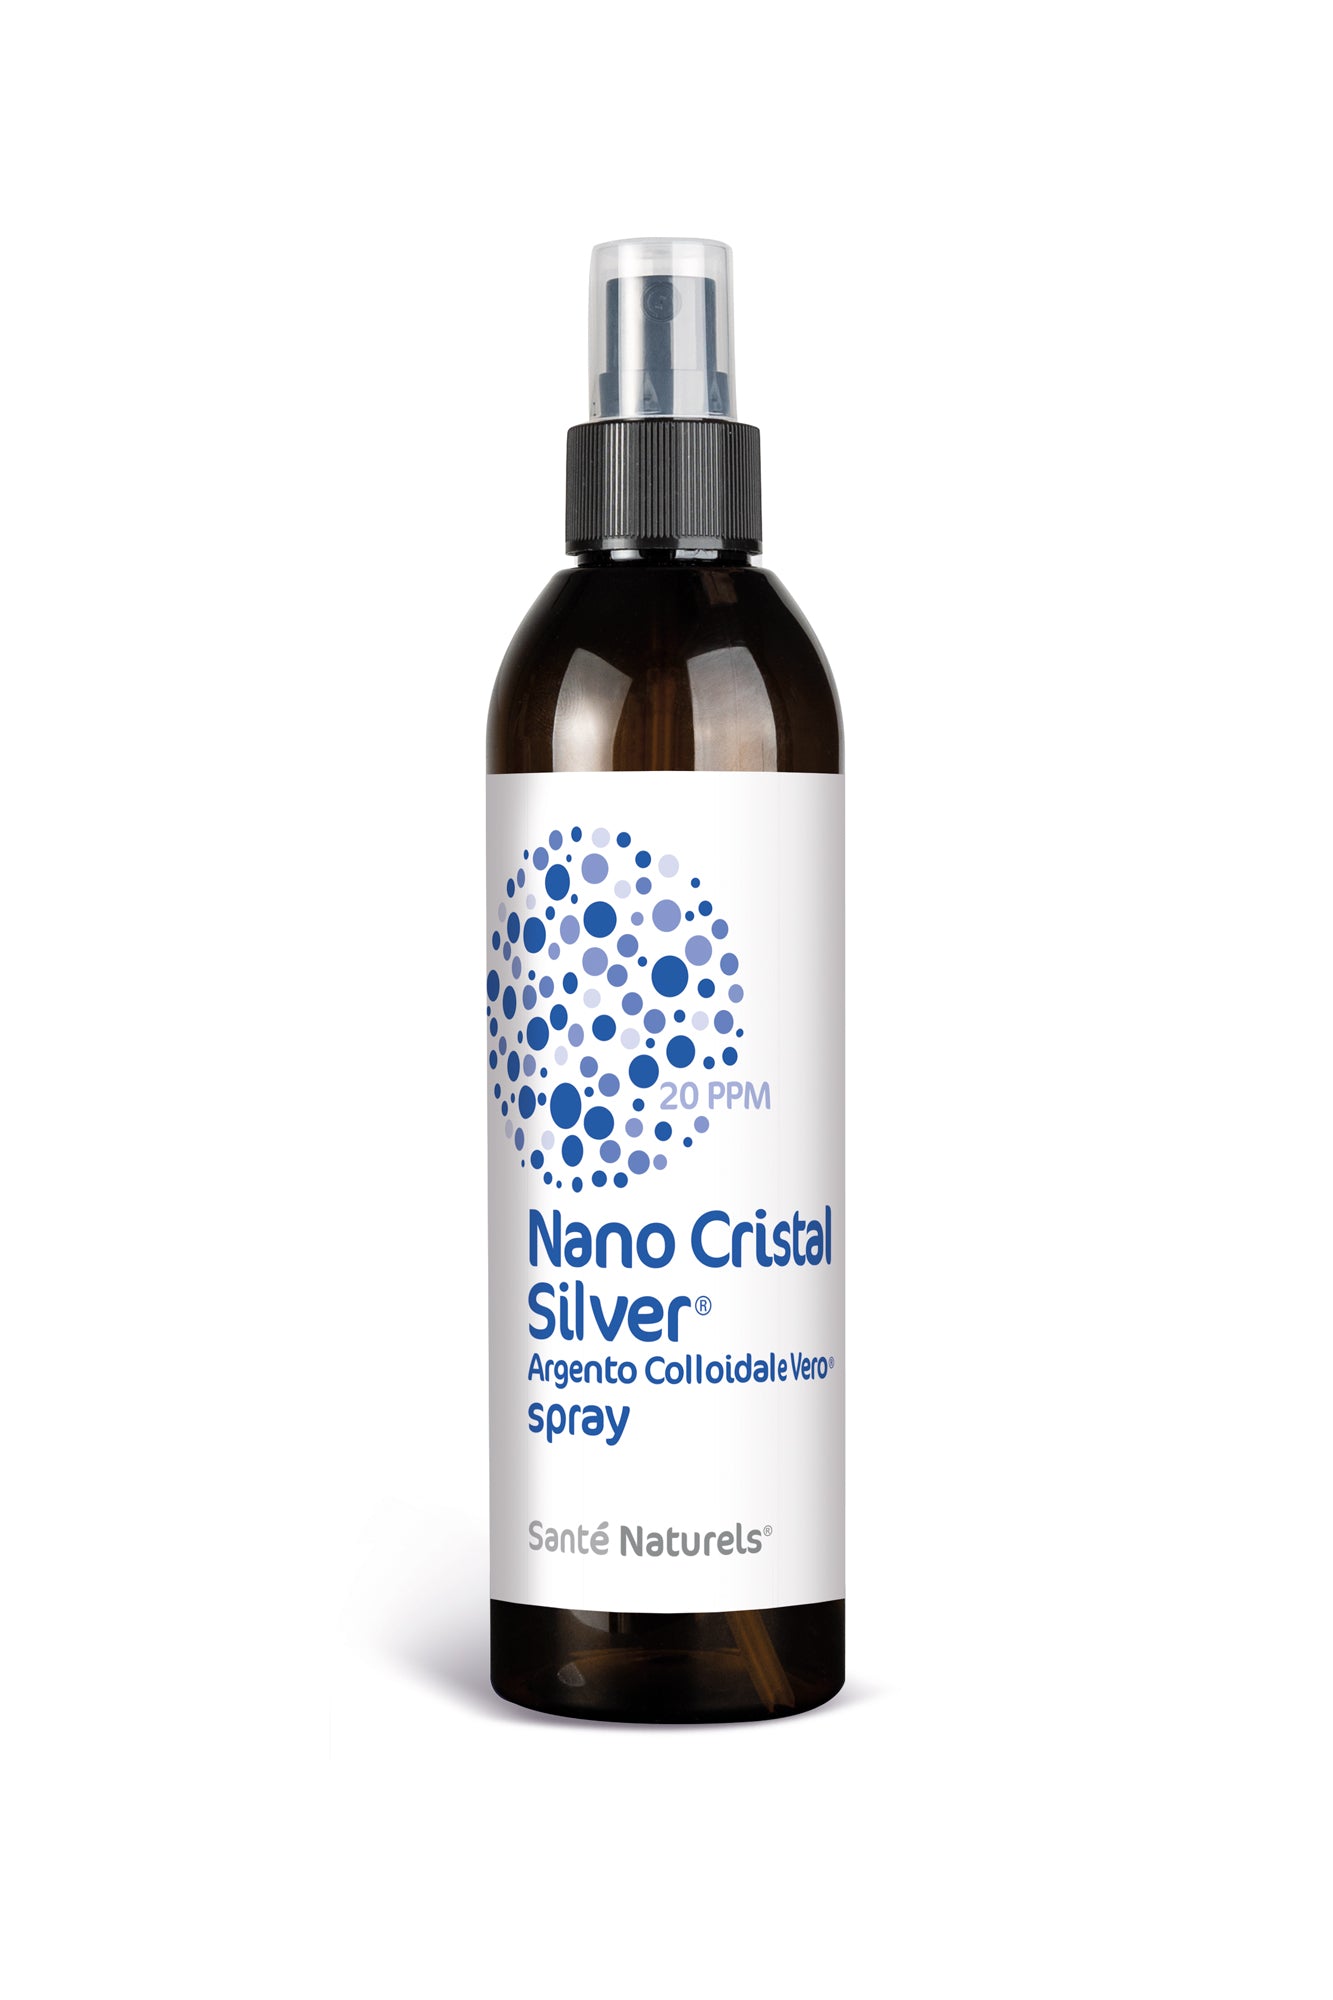 Plata Coloidal Verdadera Nano Cristal Silver® 20 ppm 500 ml LA ELECCIÓN MÁS ECONÓMICA